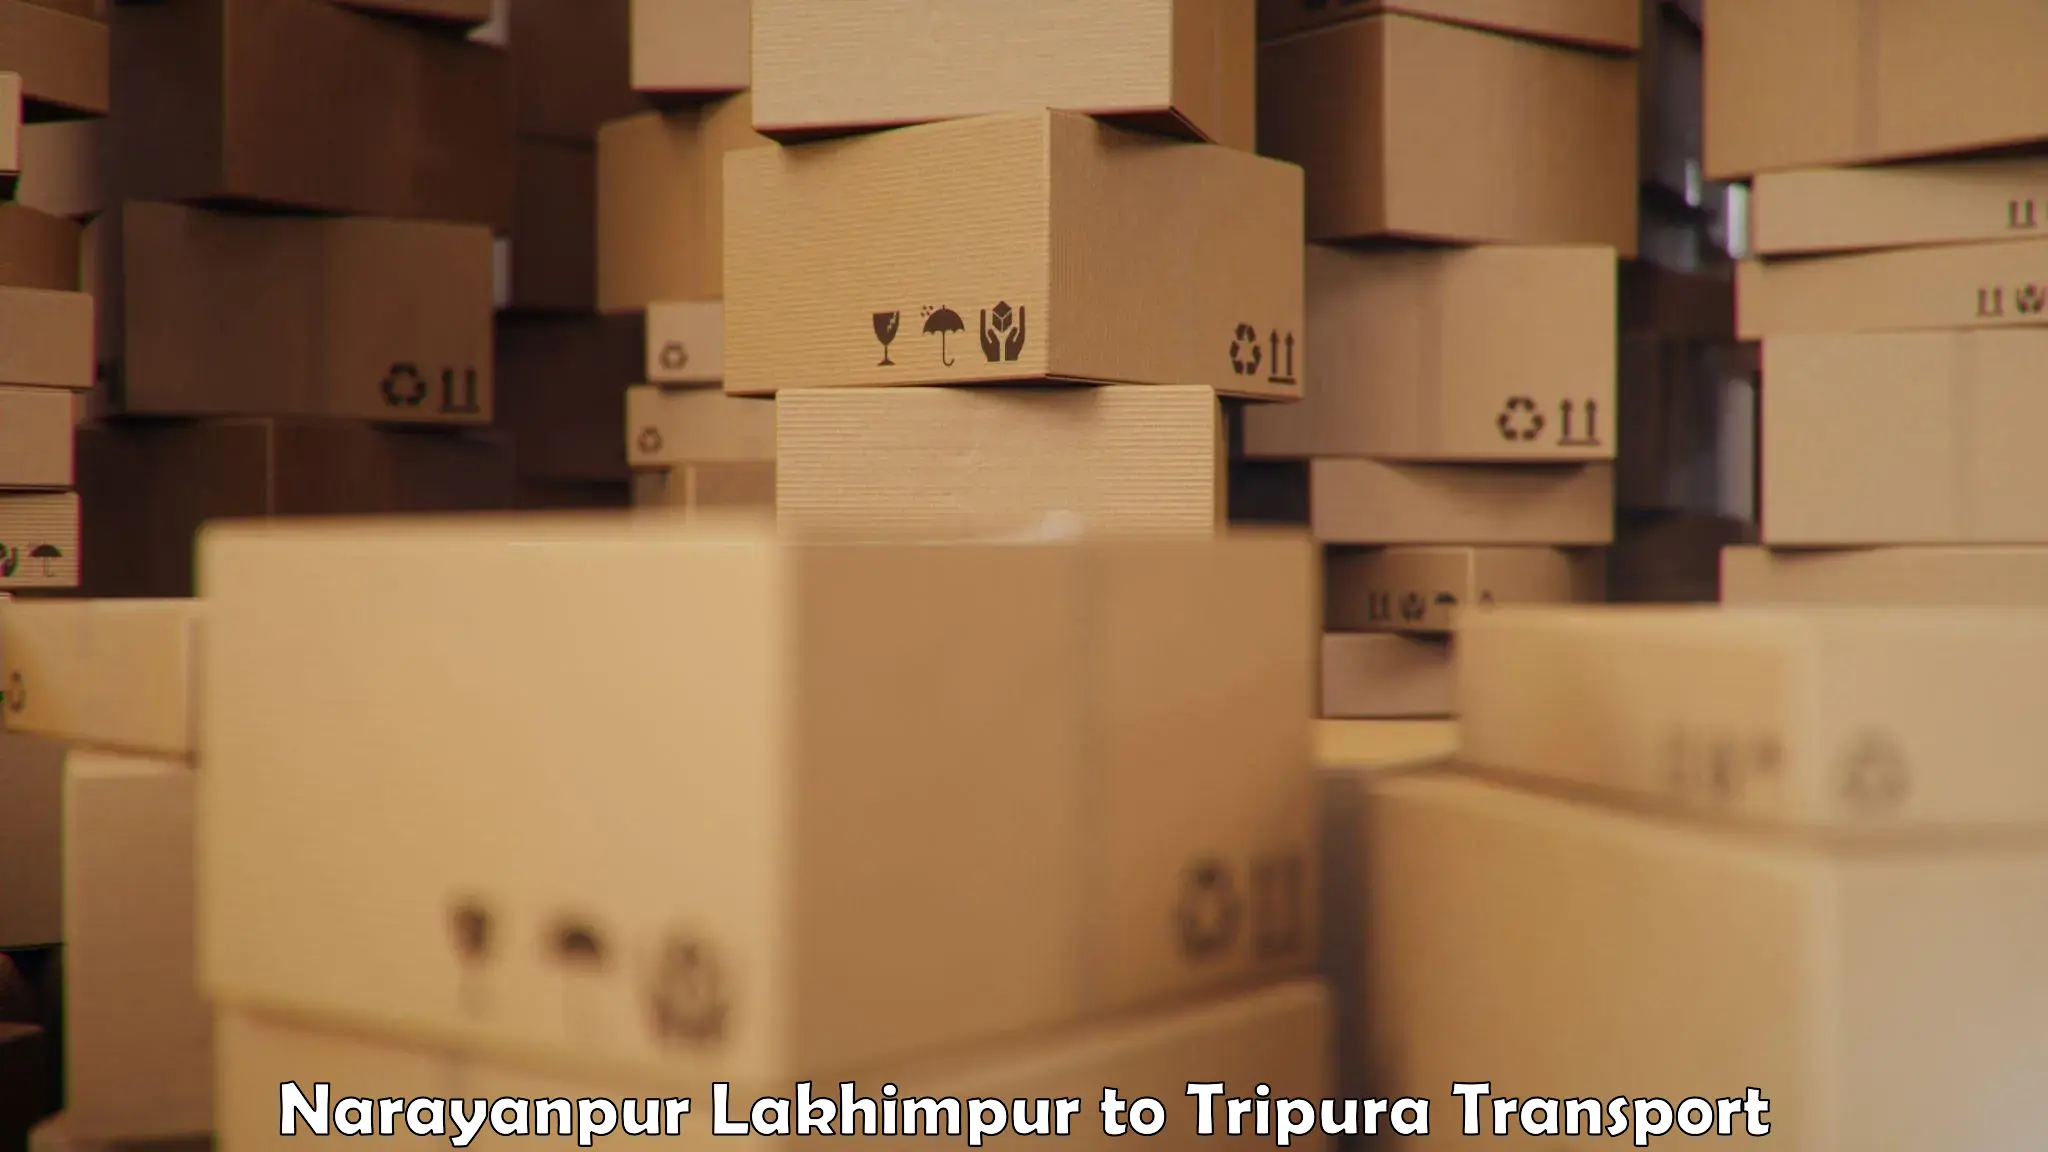 Intercity transport Narayanpur Lakhimpur to Udaipur Tripura